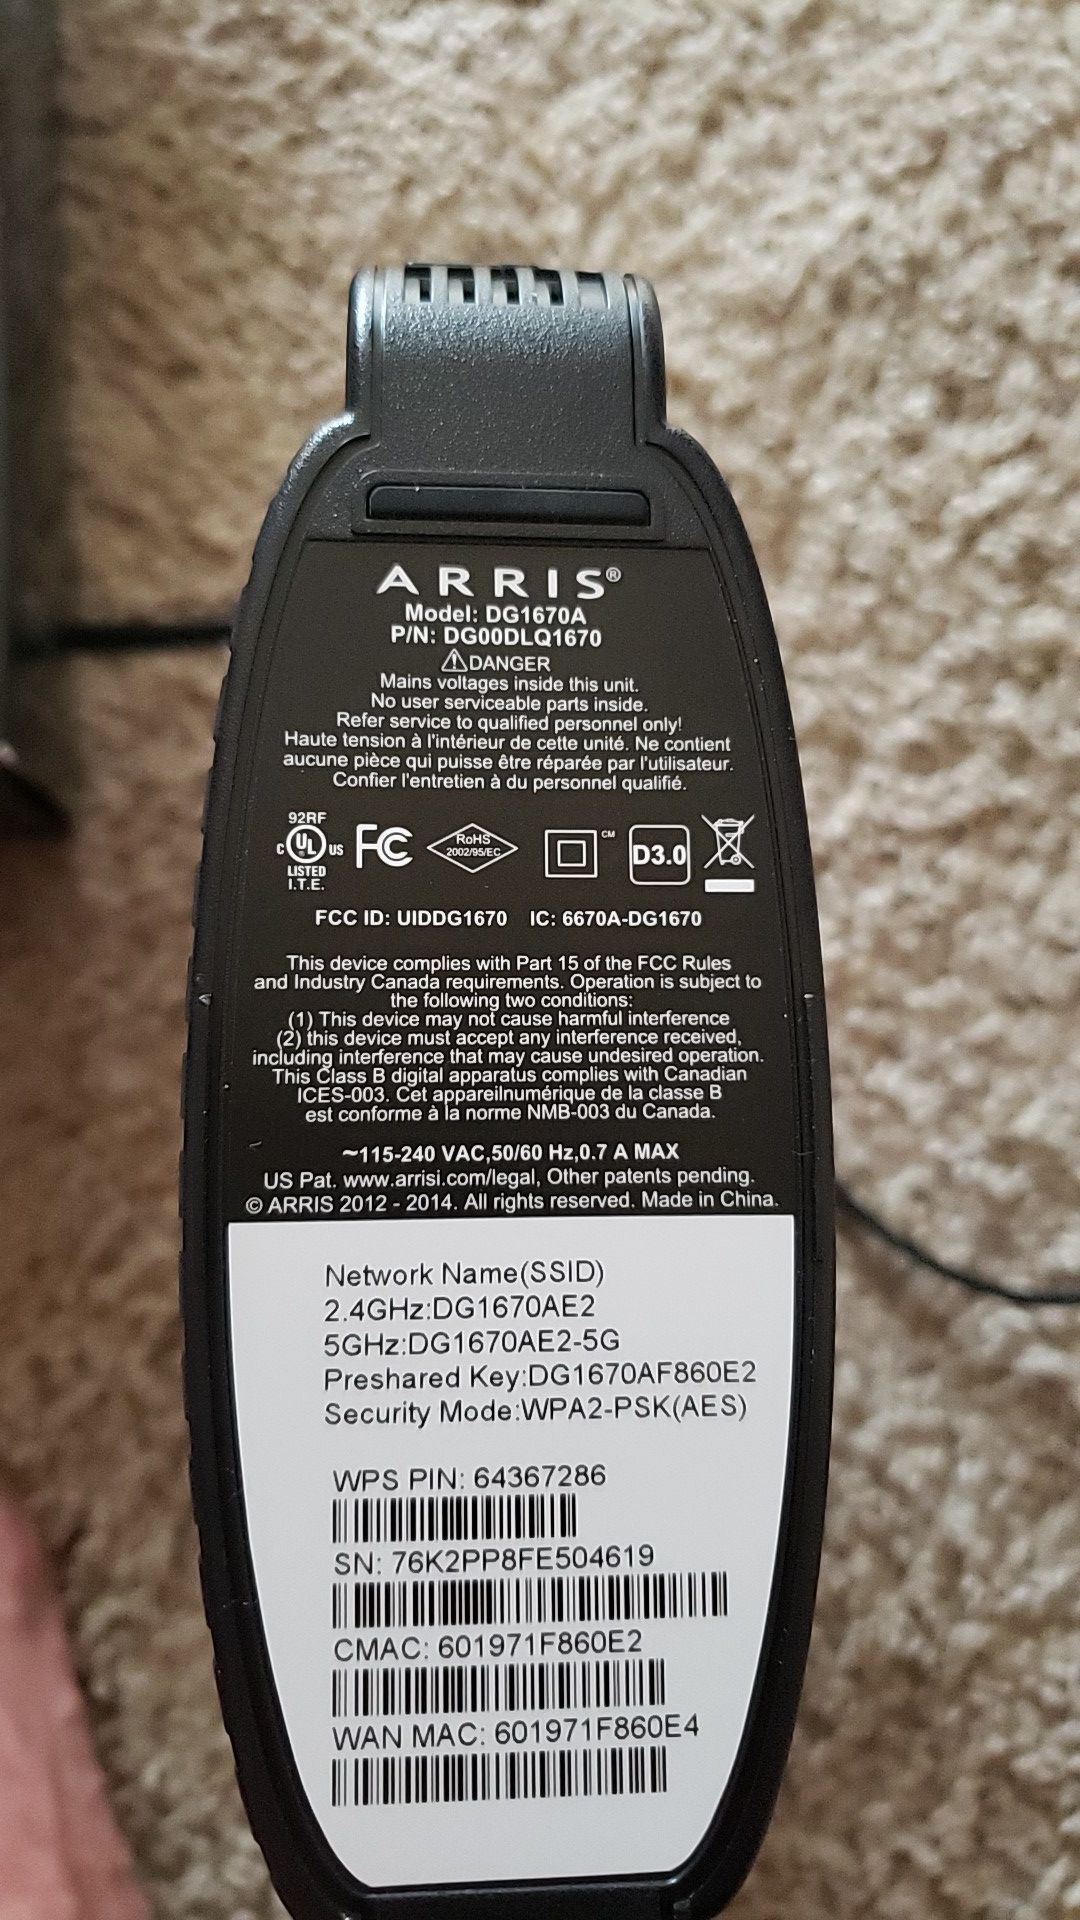 Arris DG1670A wifi router/modem